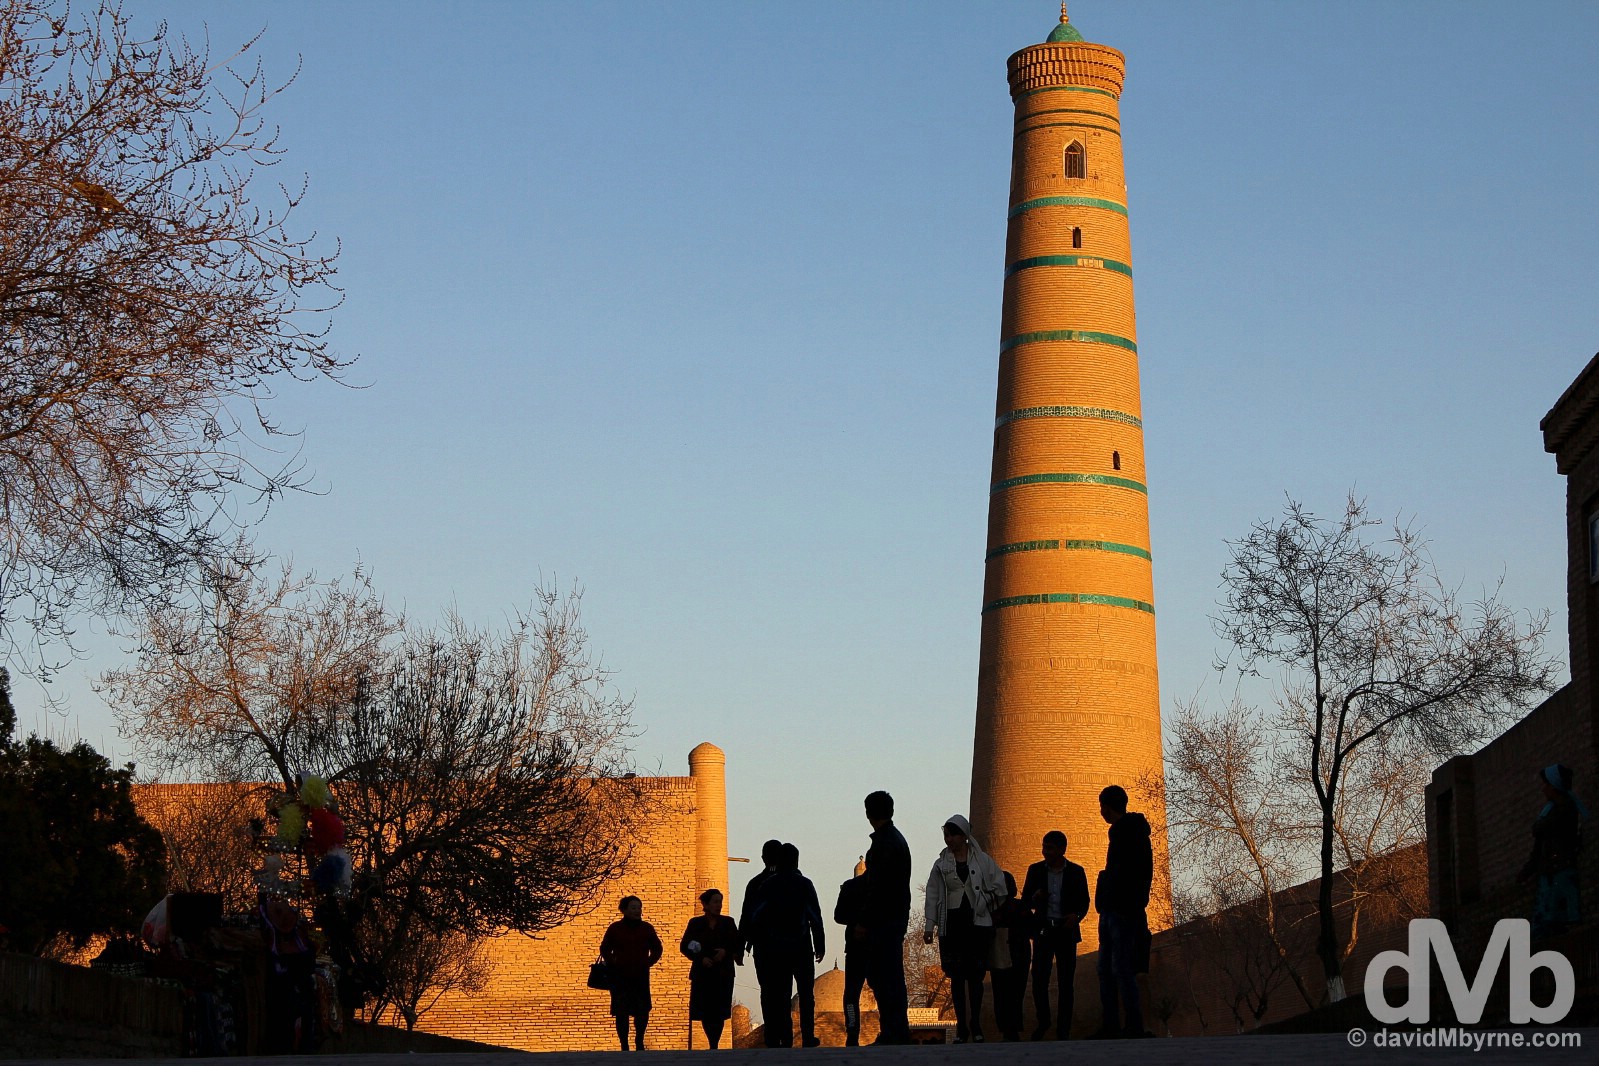 Sunset on Pahlavon Mahmud in Khiva, Uzbekistan. March 13, 2015.